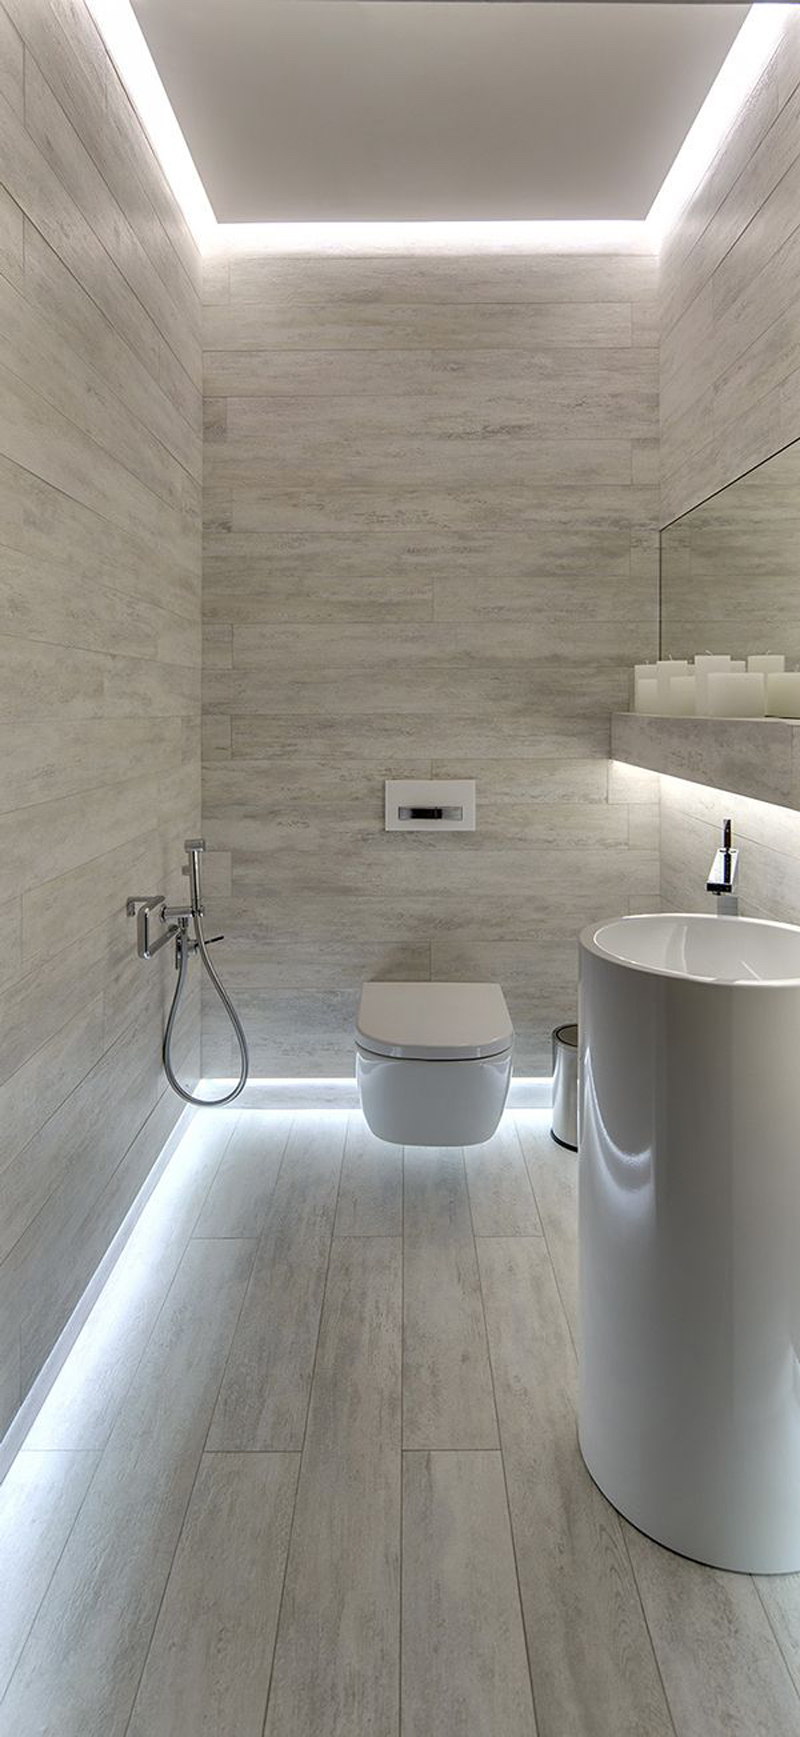 salle-bains-carrelage-beige-sable-corniches-lumineuses-profile-led-encastre